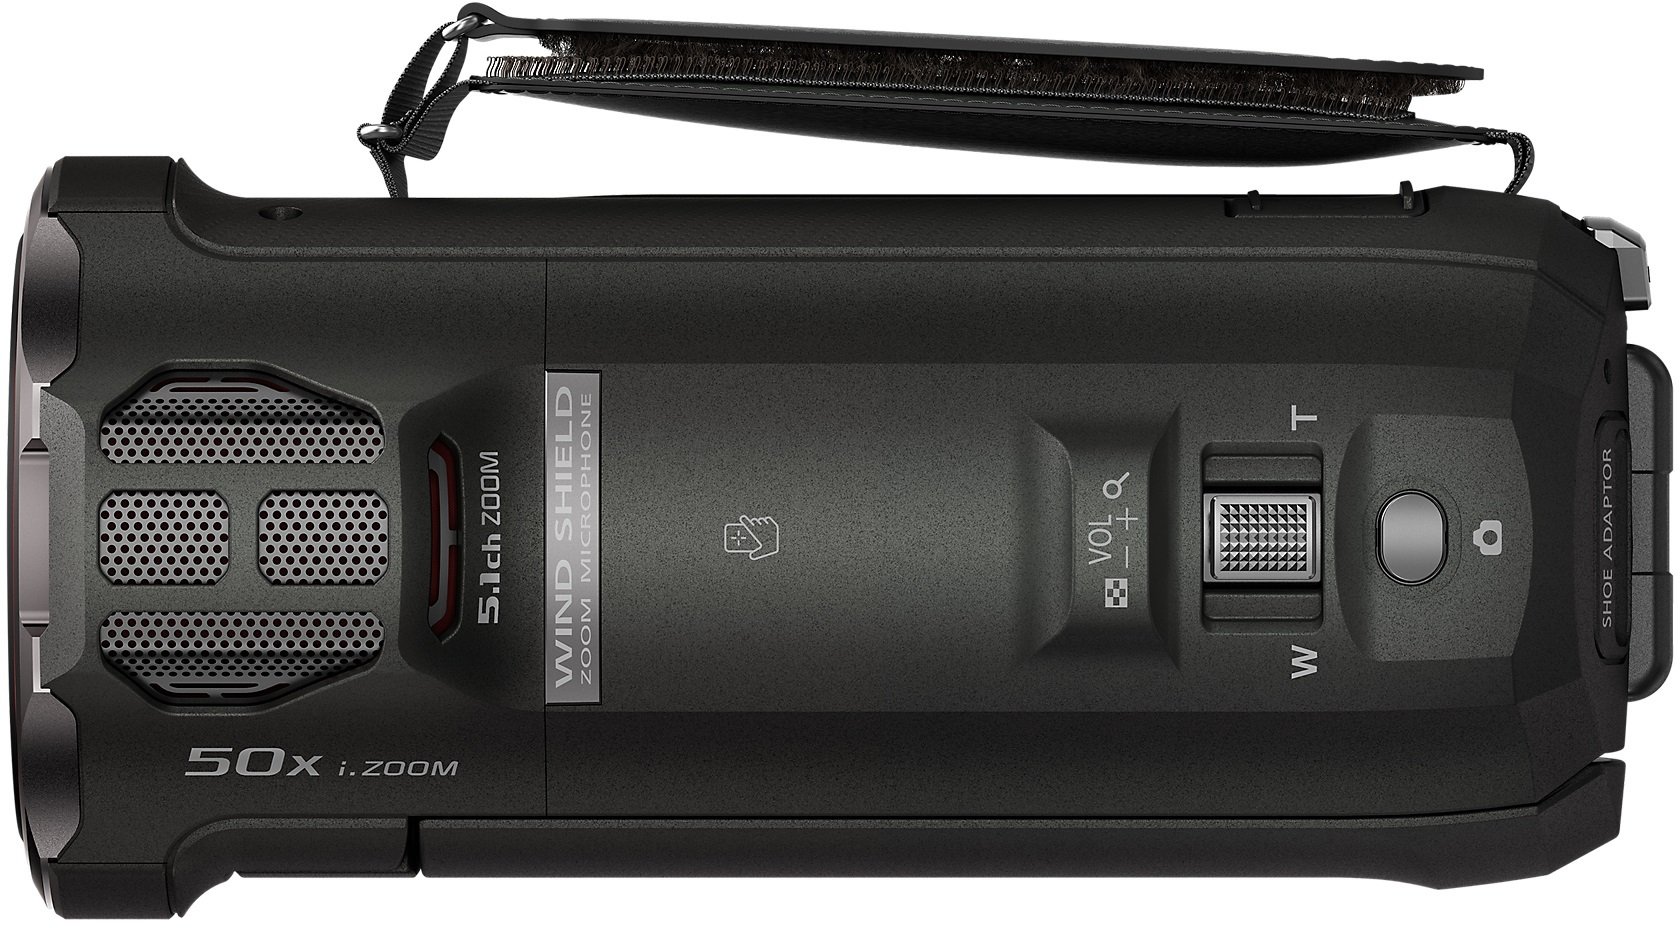 Цифровая видеокамера Panasonic HC-V785EE-K